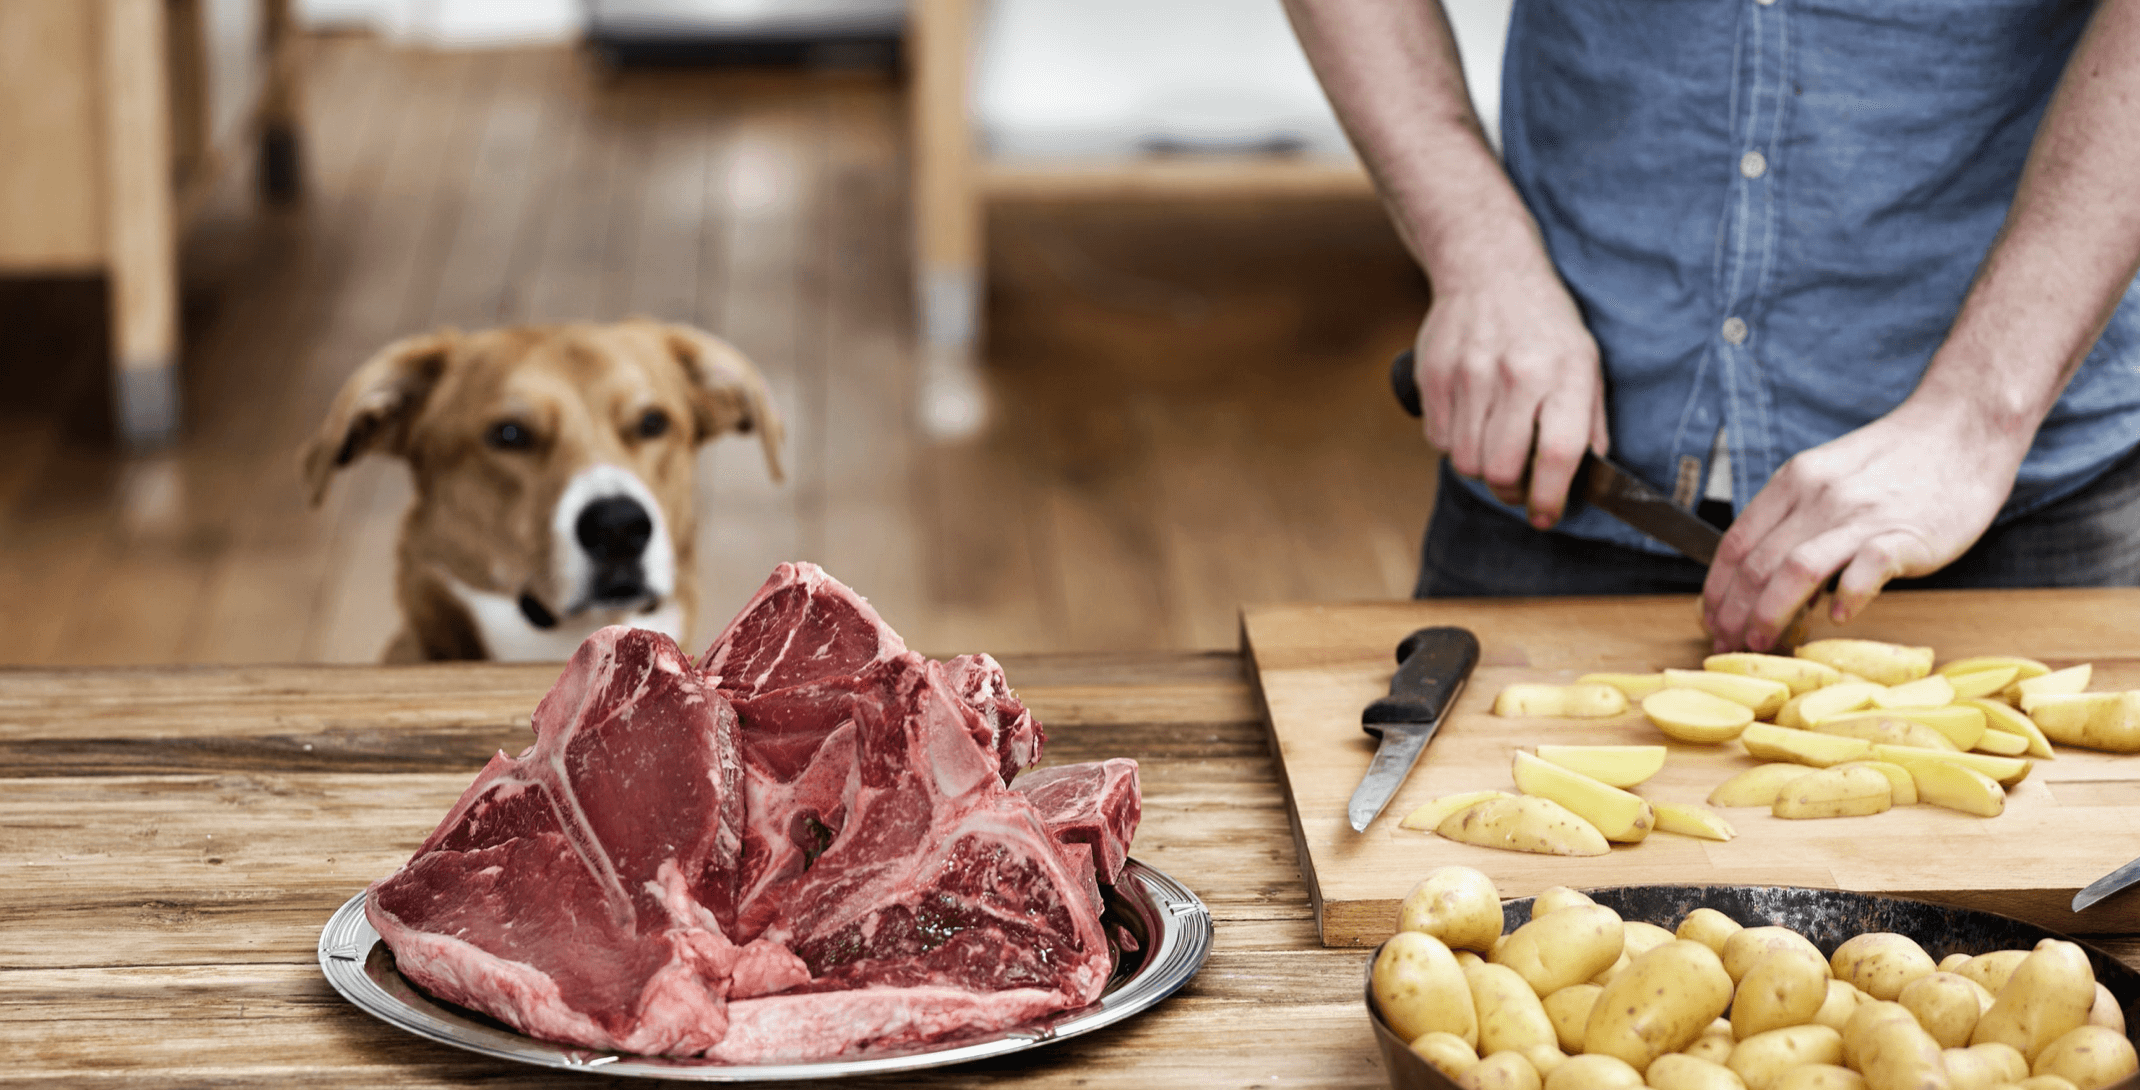 Les carnivores sont-ils en meilleure santé que les végétariens? (article GQ)